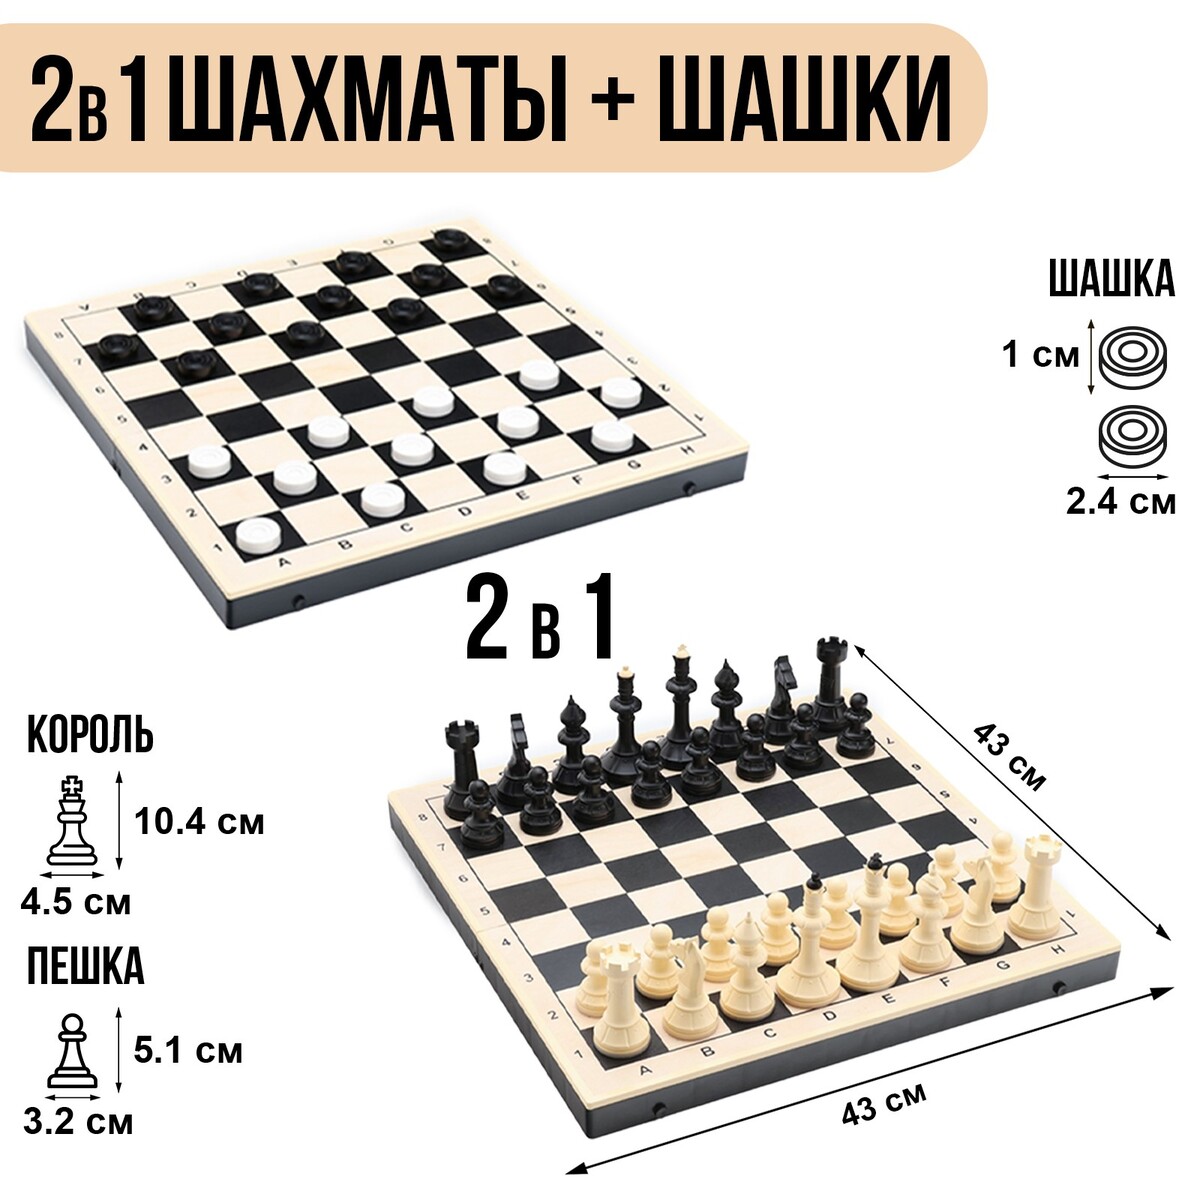 Шахматы гроссмейстерские с шашками, 40х40 см, набор 2в1 шахматы гроссмейстерские турнирные утяжеленные 40х40 см король h 10 5 см пешка 5 3 см